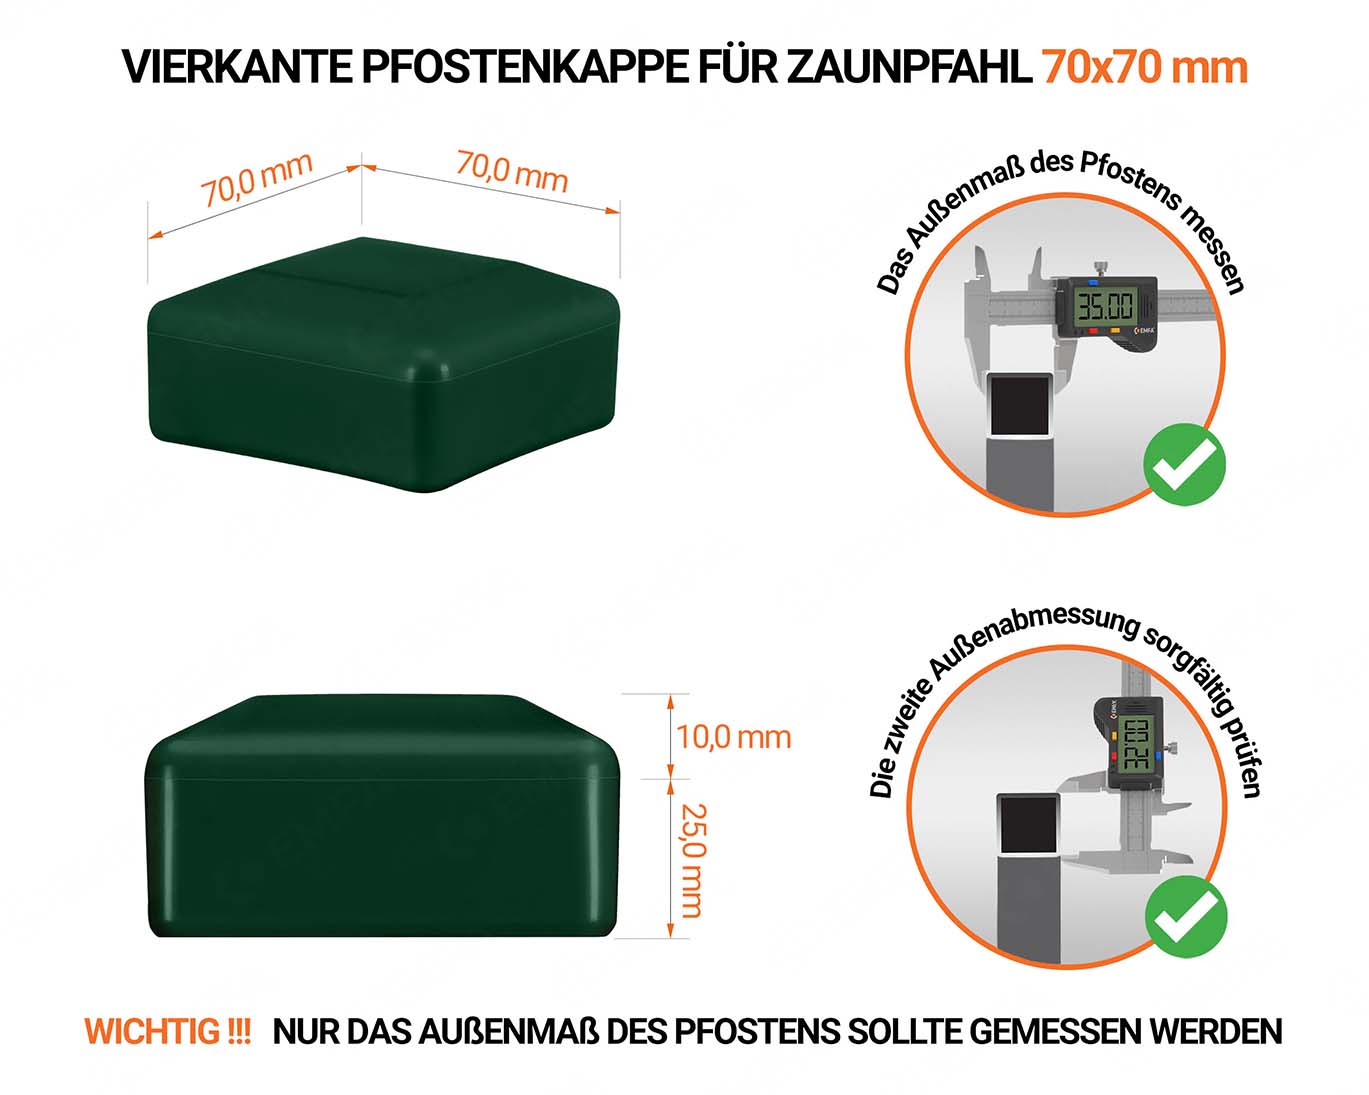 Grüne Pfostenkappen vierkant für Pfostenmaße 70x70 mm  mit technischen Abmessungen und Anleitung für korrekte Messung